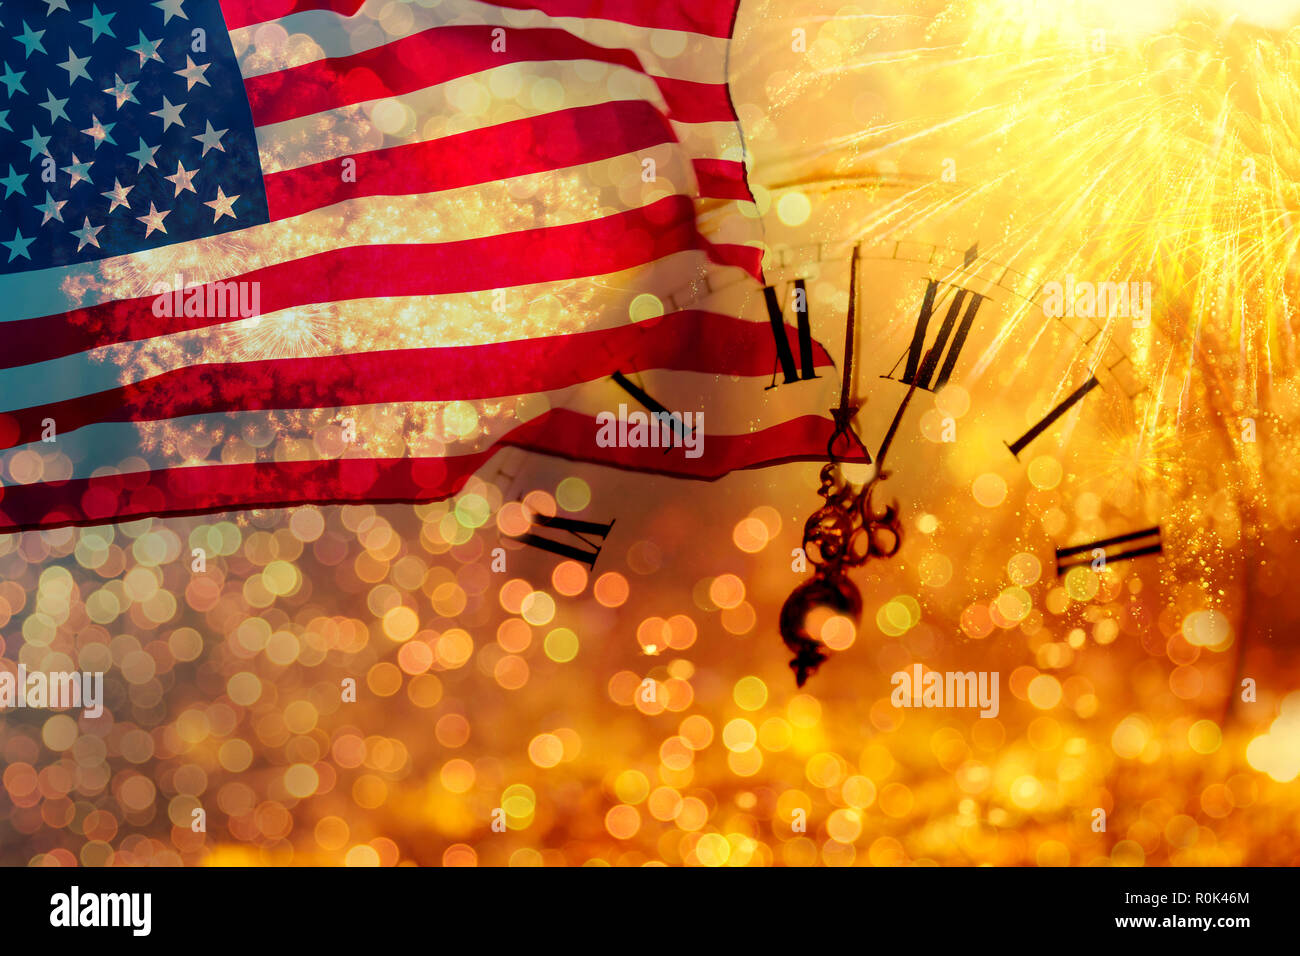 Celebrando el Día de la independencia. Estados Unidos de América ESTADOS UNIDOS bandera con fondo de fuegos artificiales para el 4º de julio Foto de stock